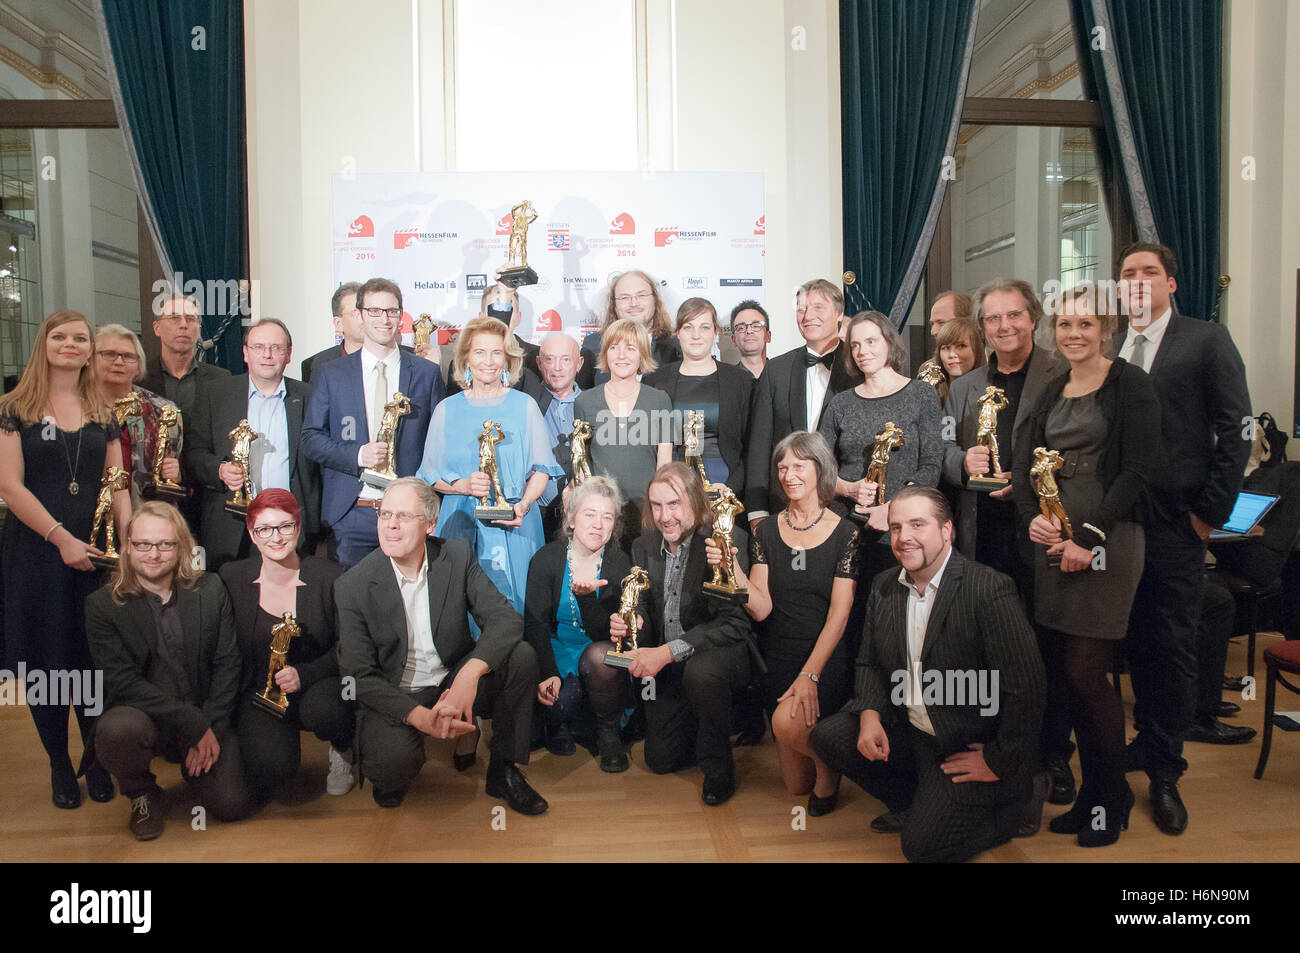 FRANKFURT AM MAIN, Germania - 21 ottobre: Hessischer Kinokulturpreis a Hessischer Film- und Kinopreis 2016 Foto Stock